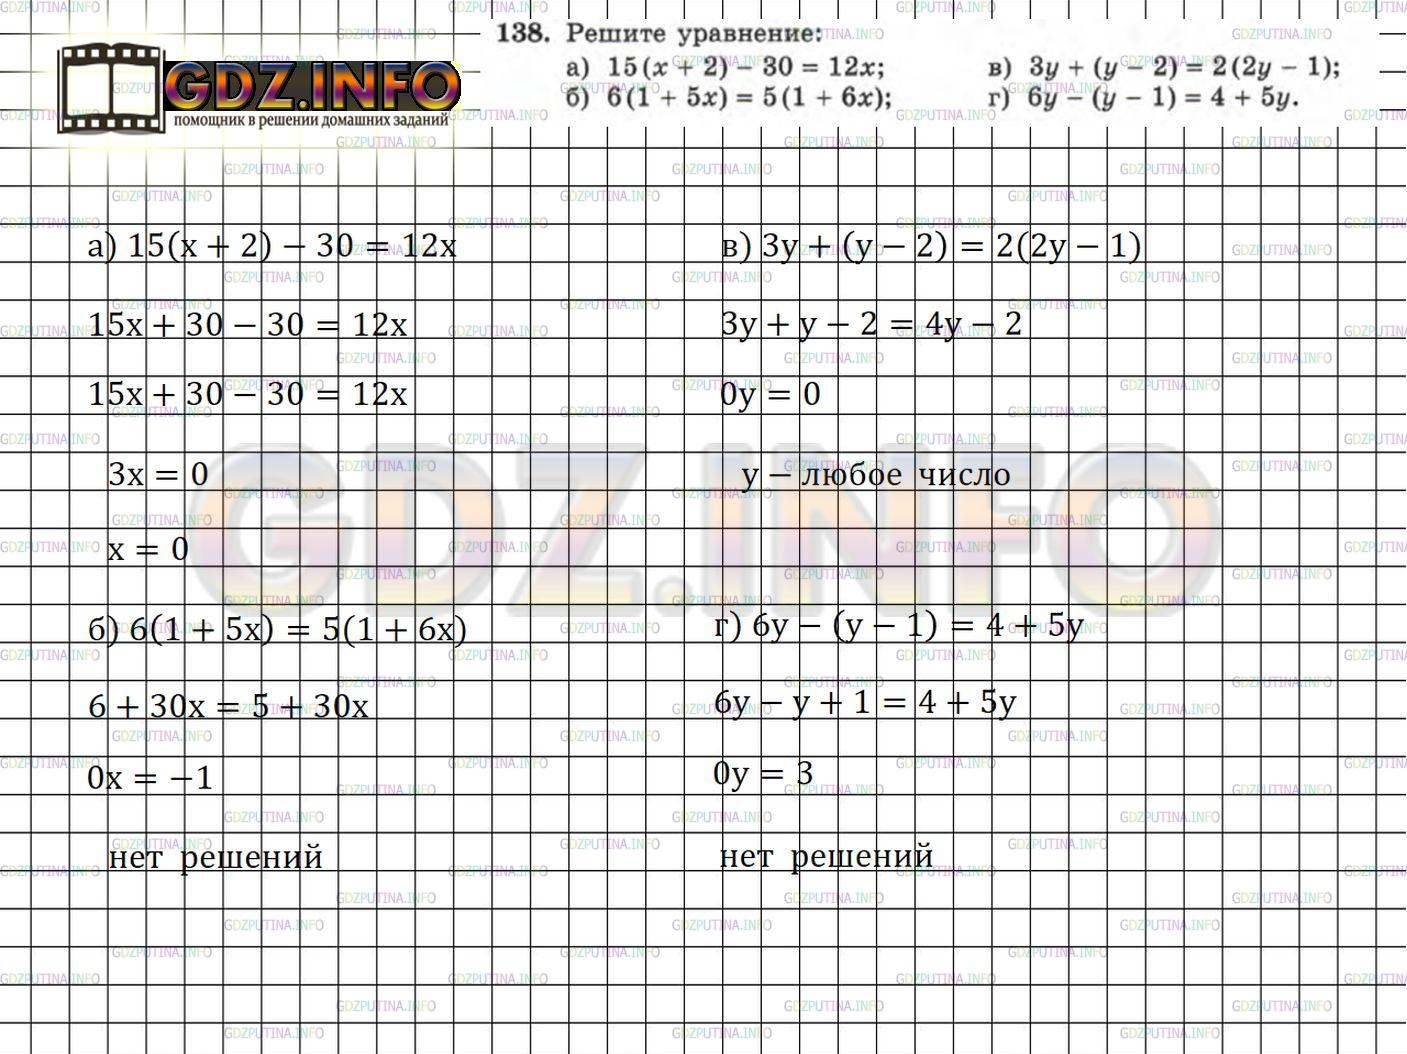 Фото решения 5: Номер задания №138 из ГДЗ по Алгебре 7 класс: Макарычев Ю.Н. г.